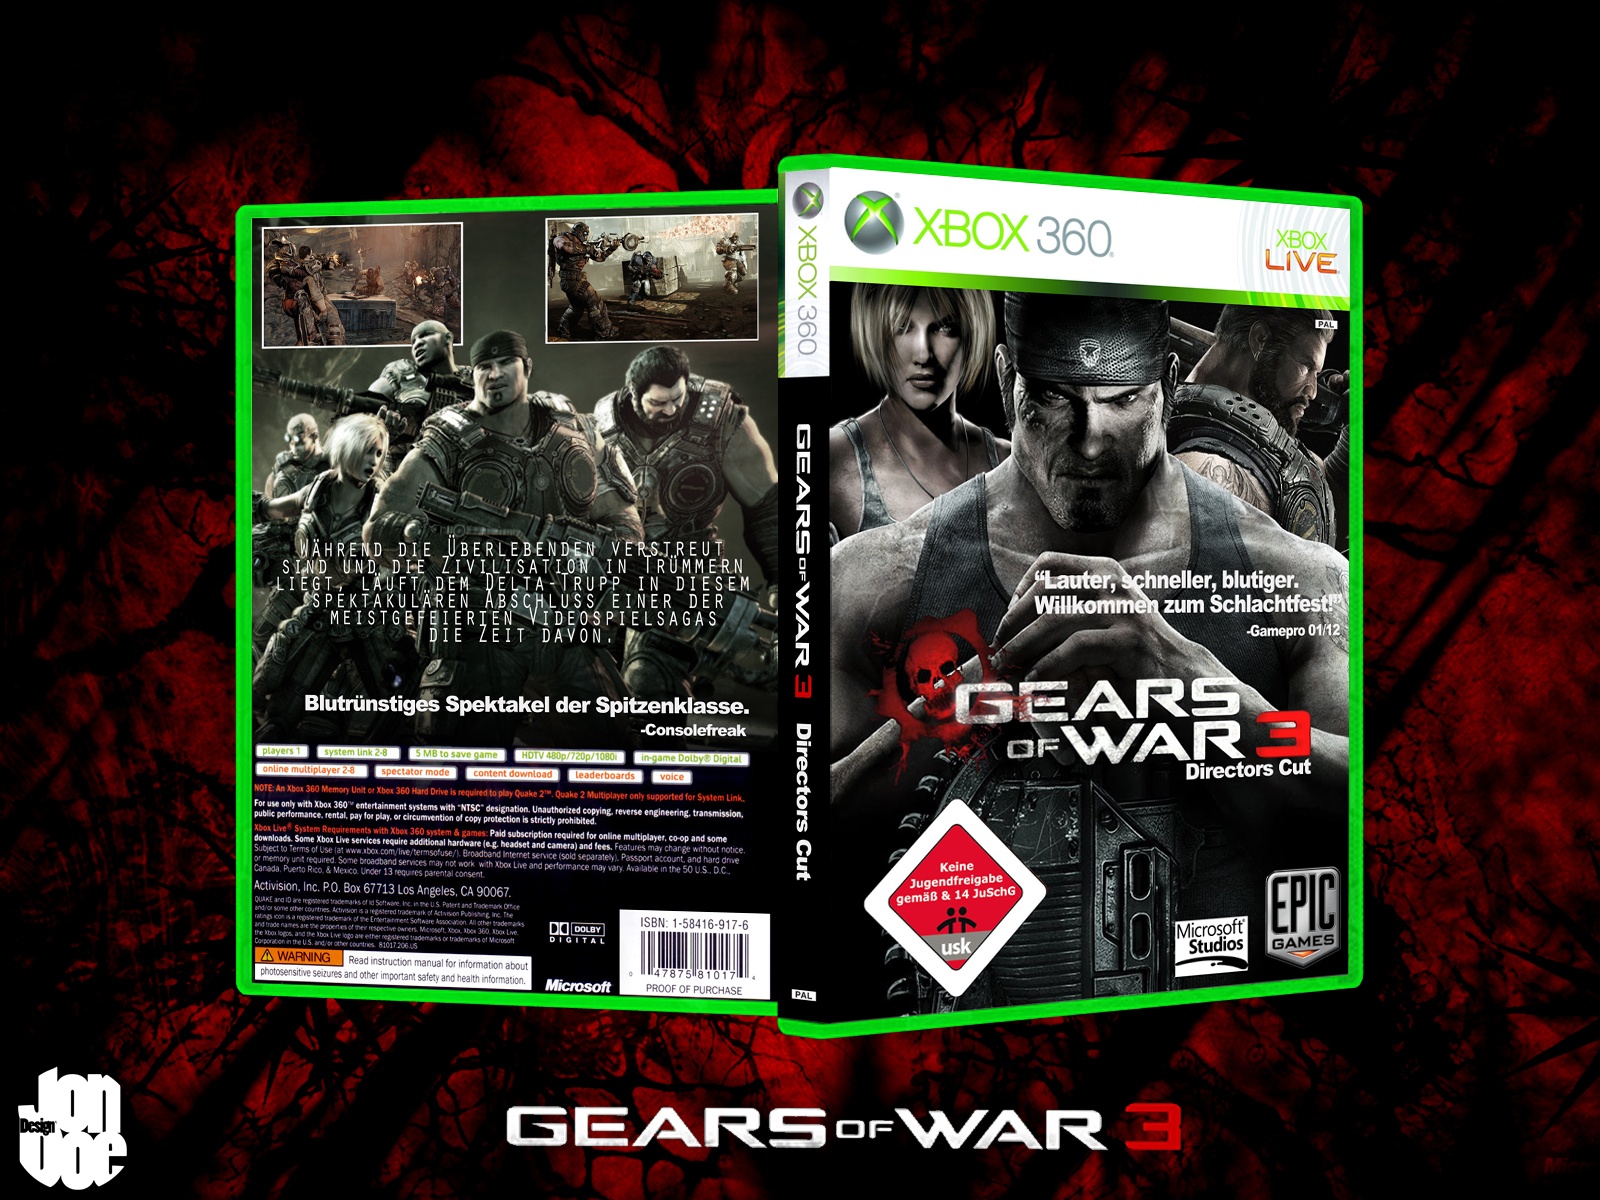 Gears of War 3 Directors Cut box cover